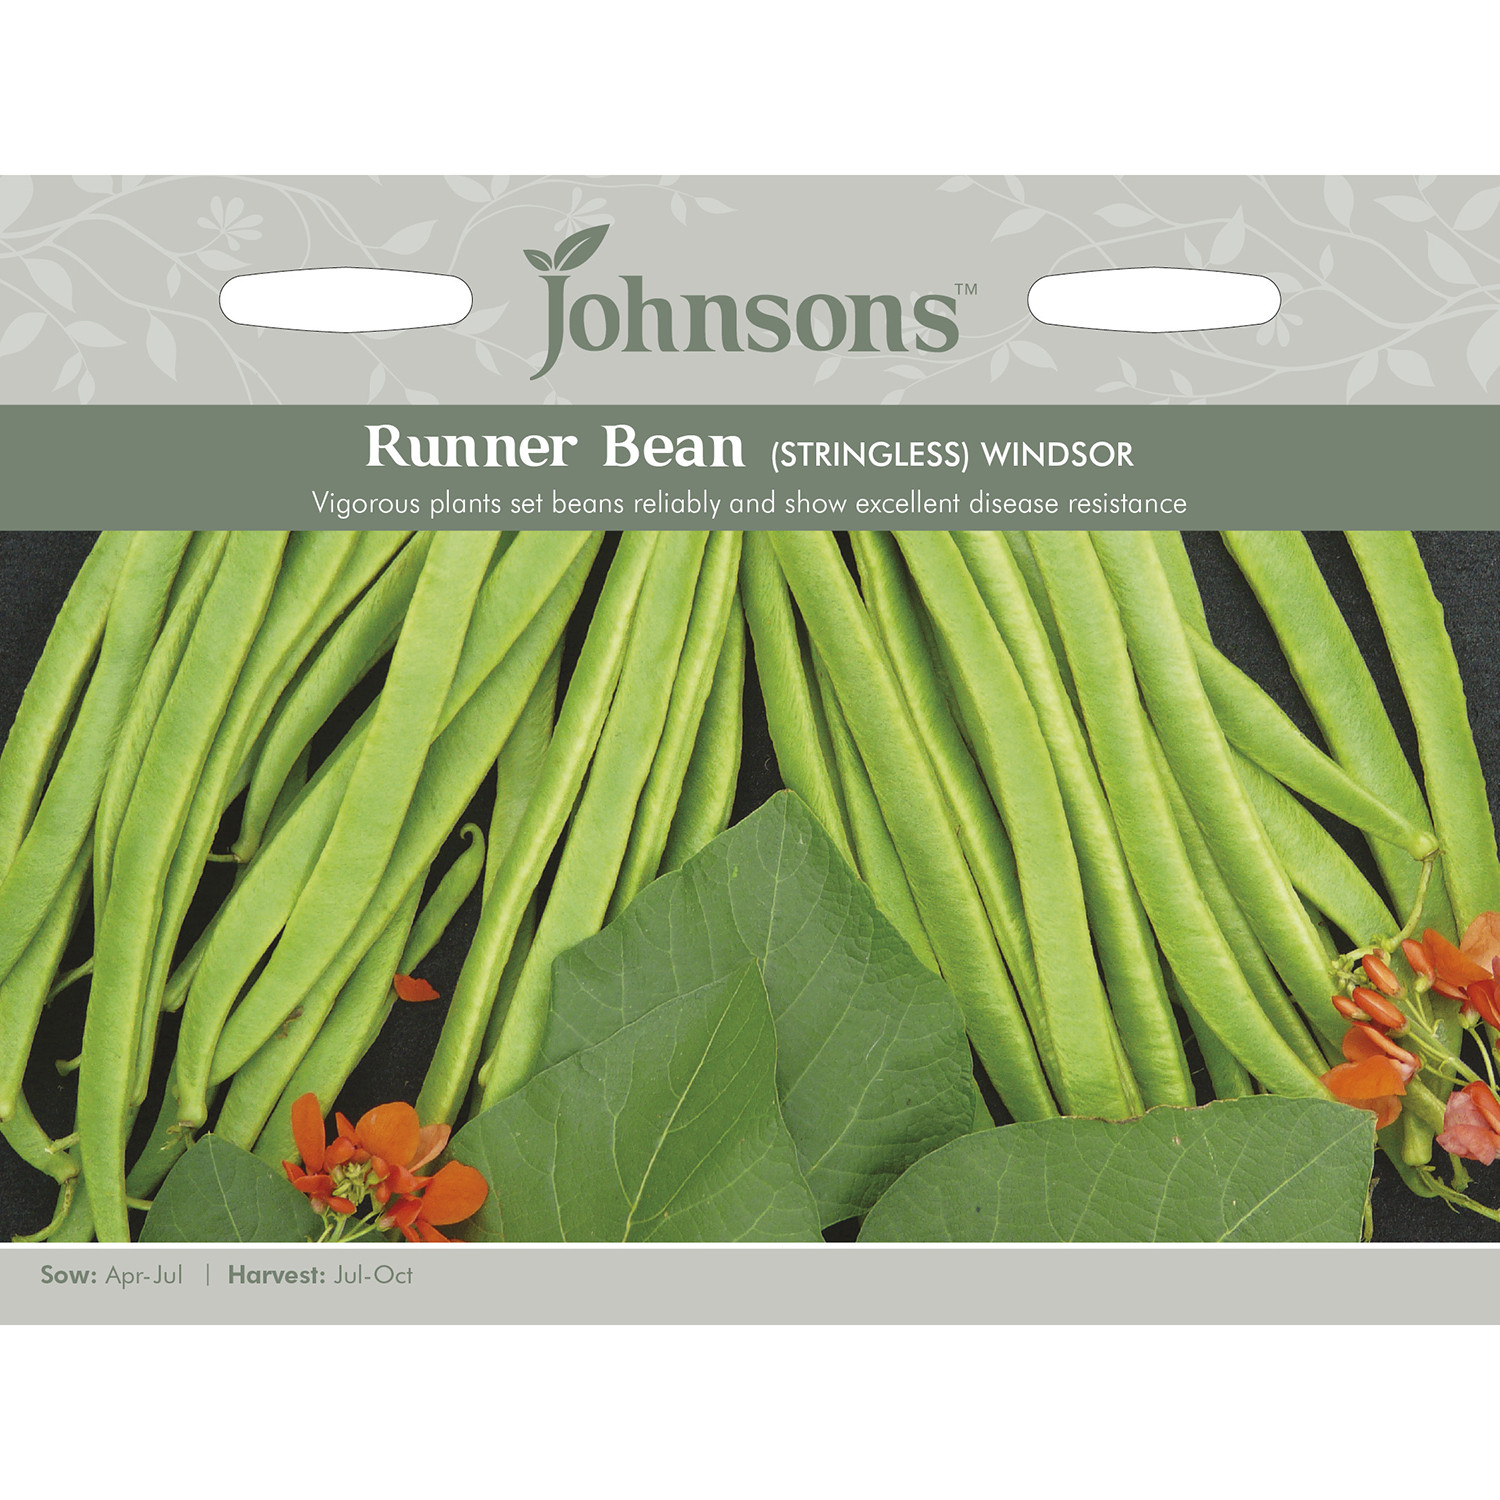 Johnsons Stringless Windsor Runner Bean Seeds Image 2